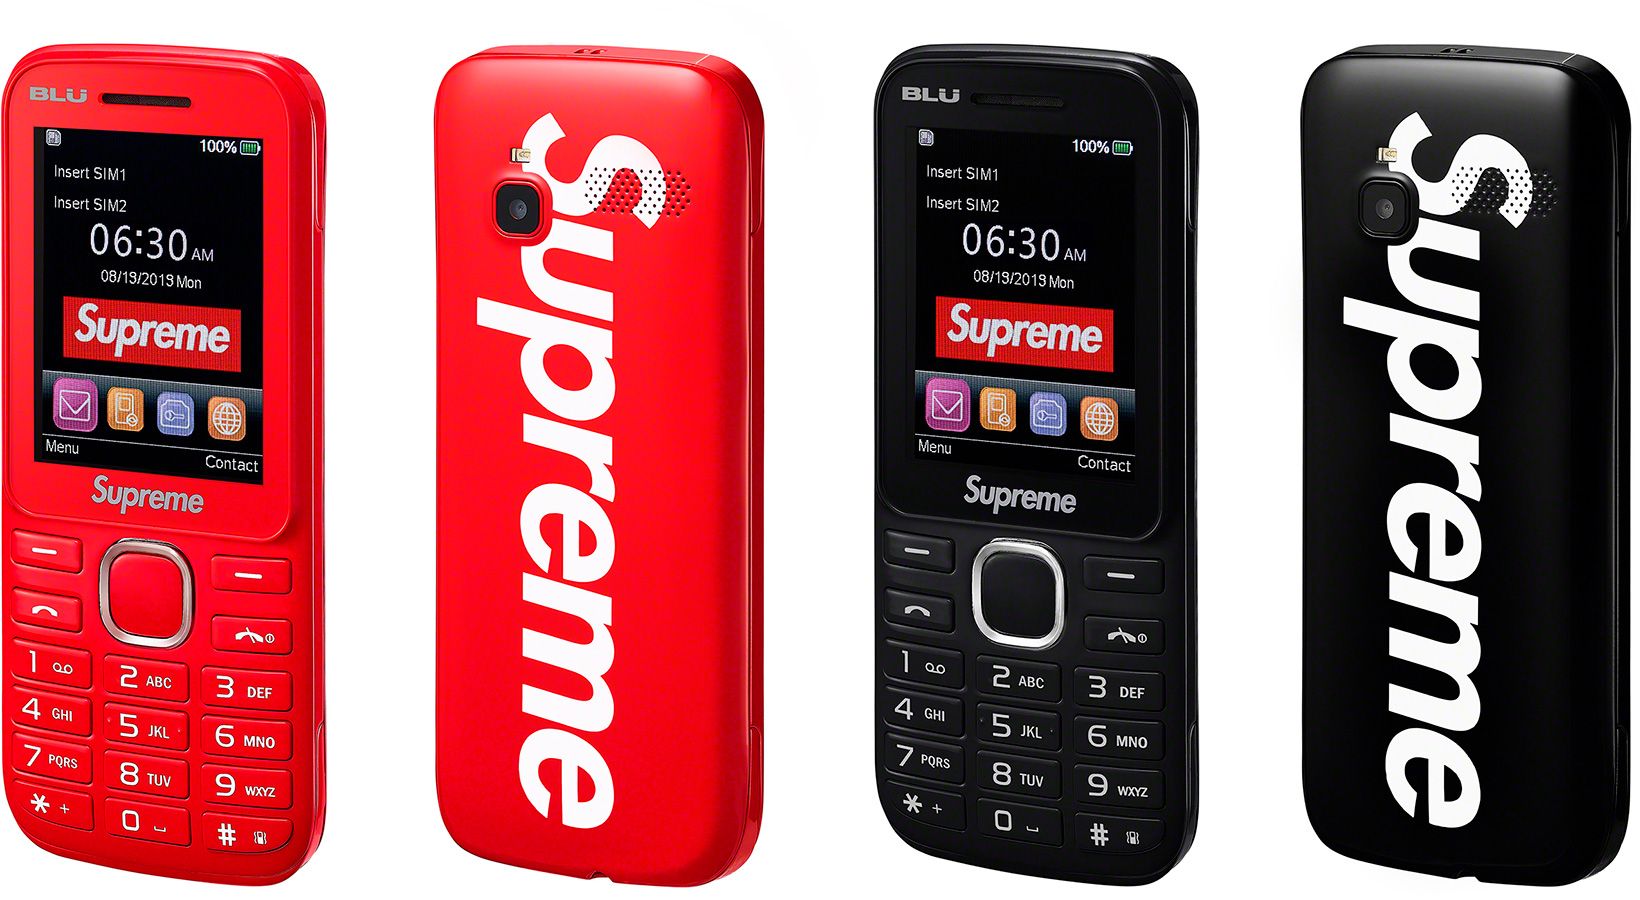 Supreme®/BLU Burner Phone – Supreme